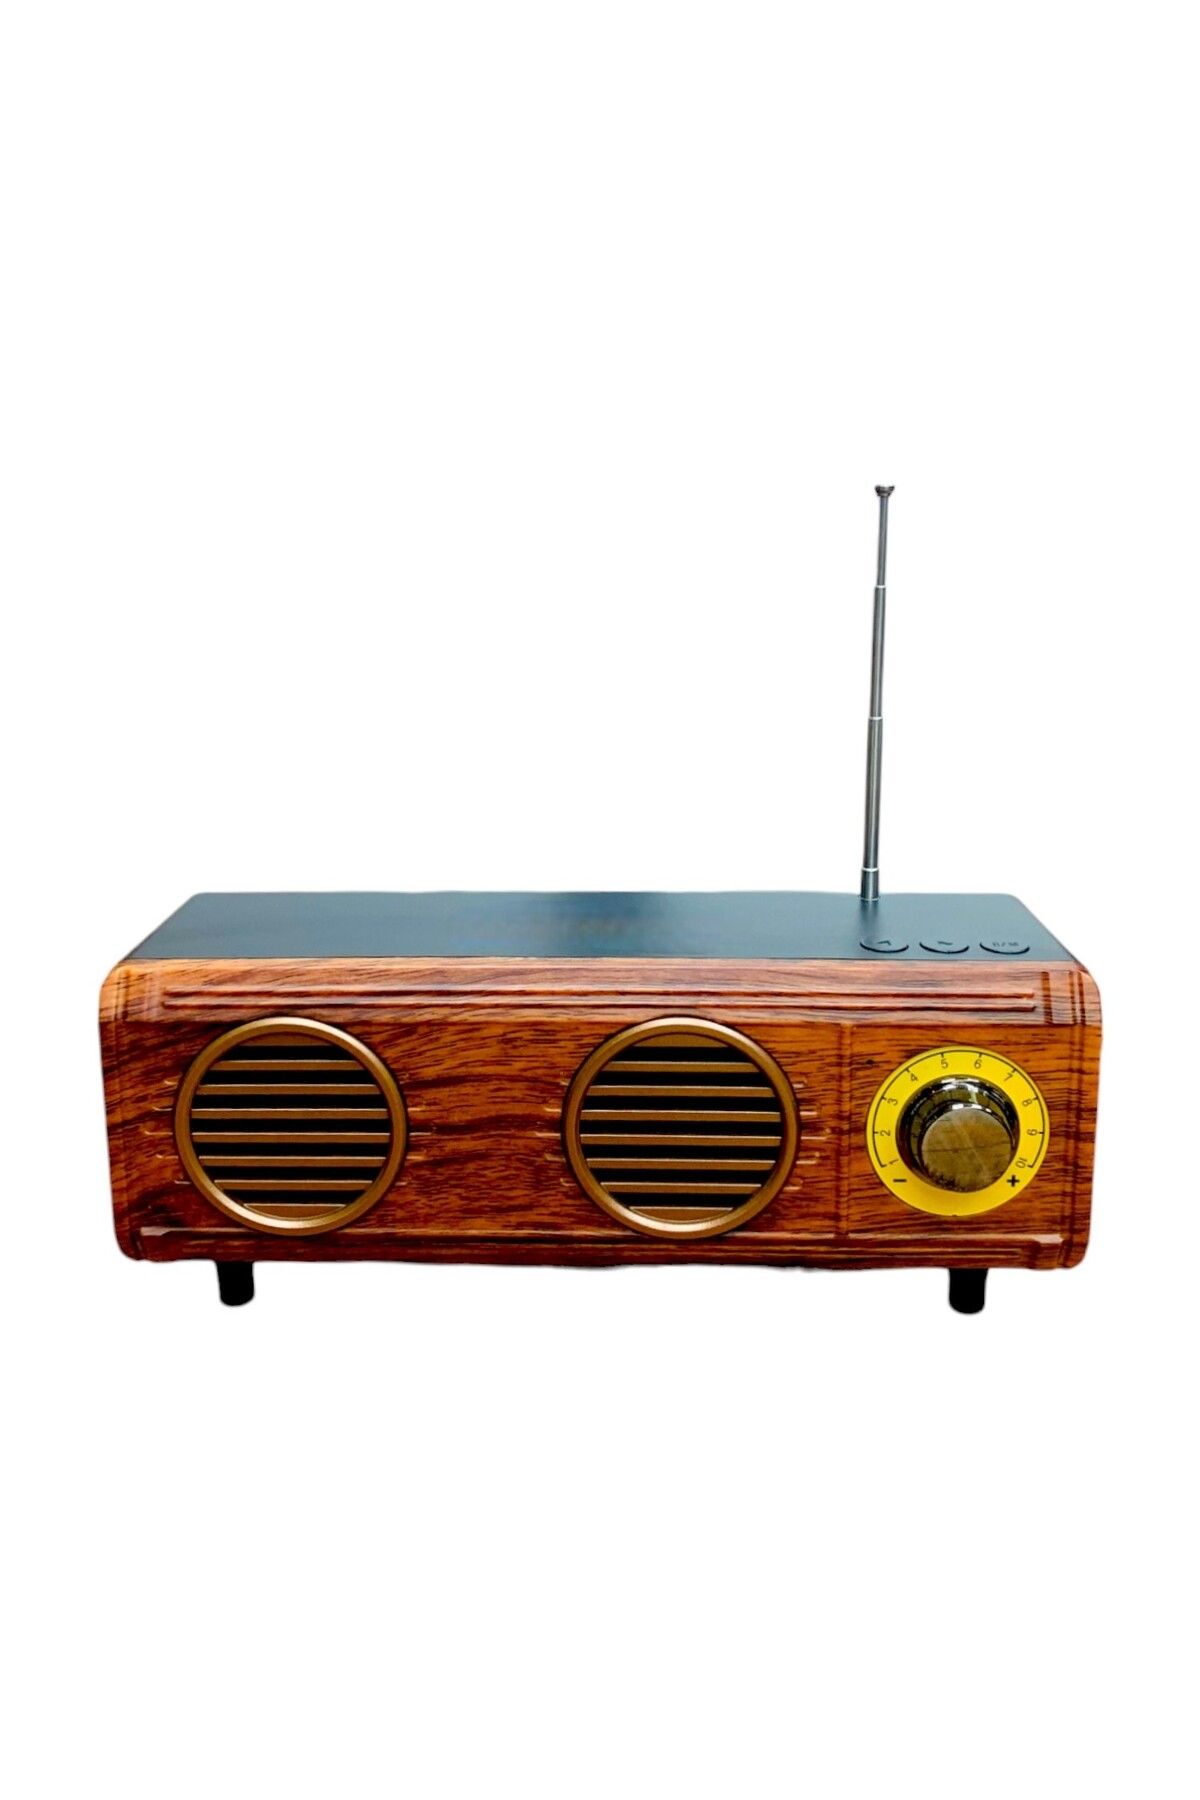 sommeow Nostaljik Mini Radyo(Özel Trt Görünüm,Bluetoothlu, Pil Ve Güç Kablosu Dahildir)